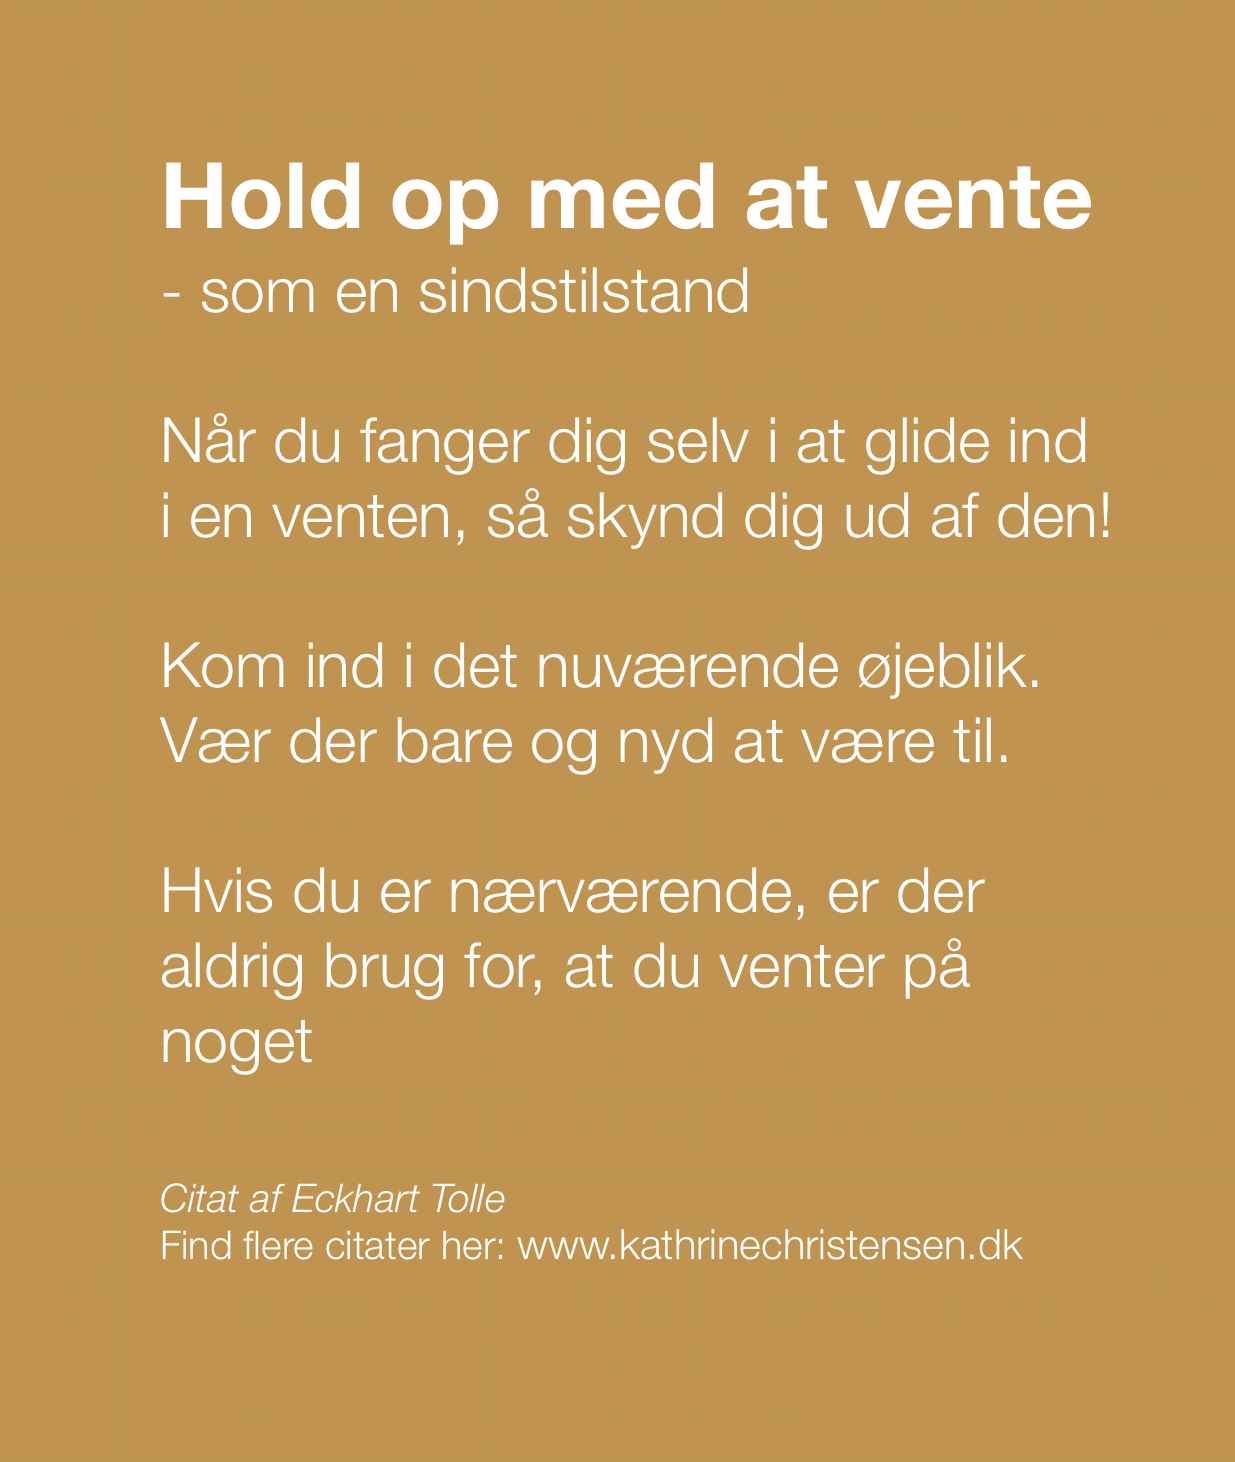 Hold op med at vente www.kathrinechristensen.dk januar 2023 citat - beskåret jpeg